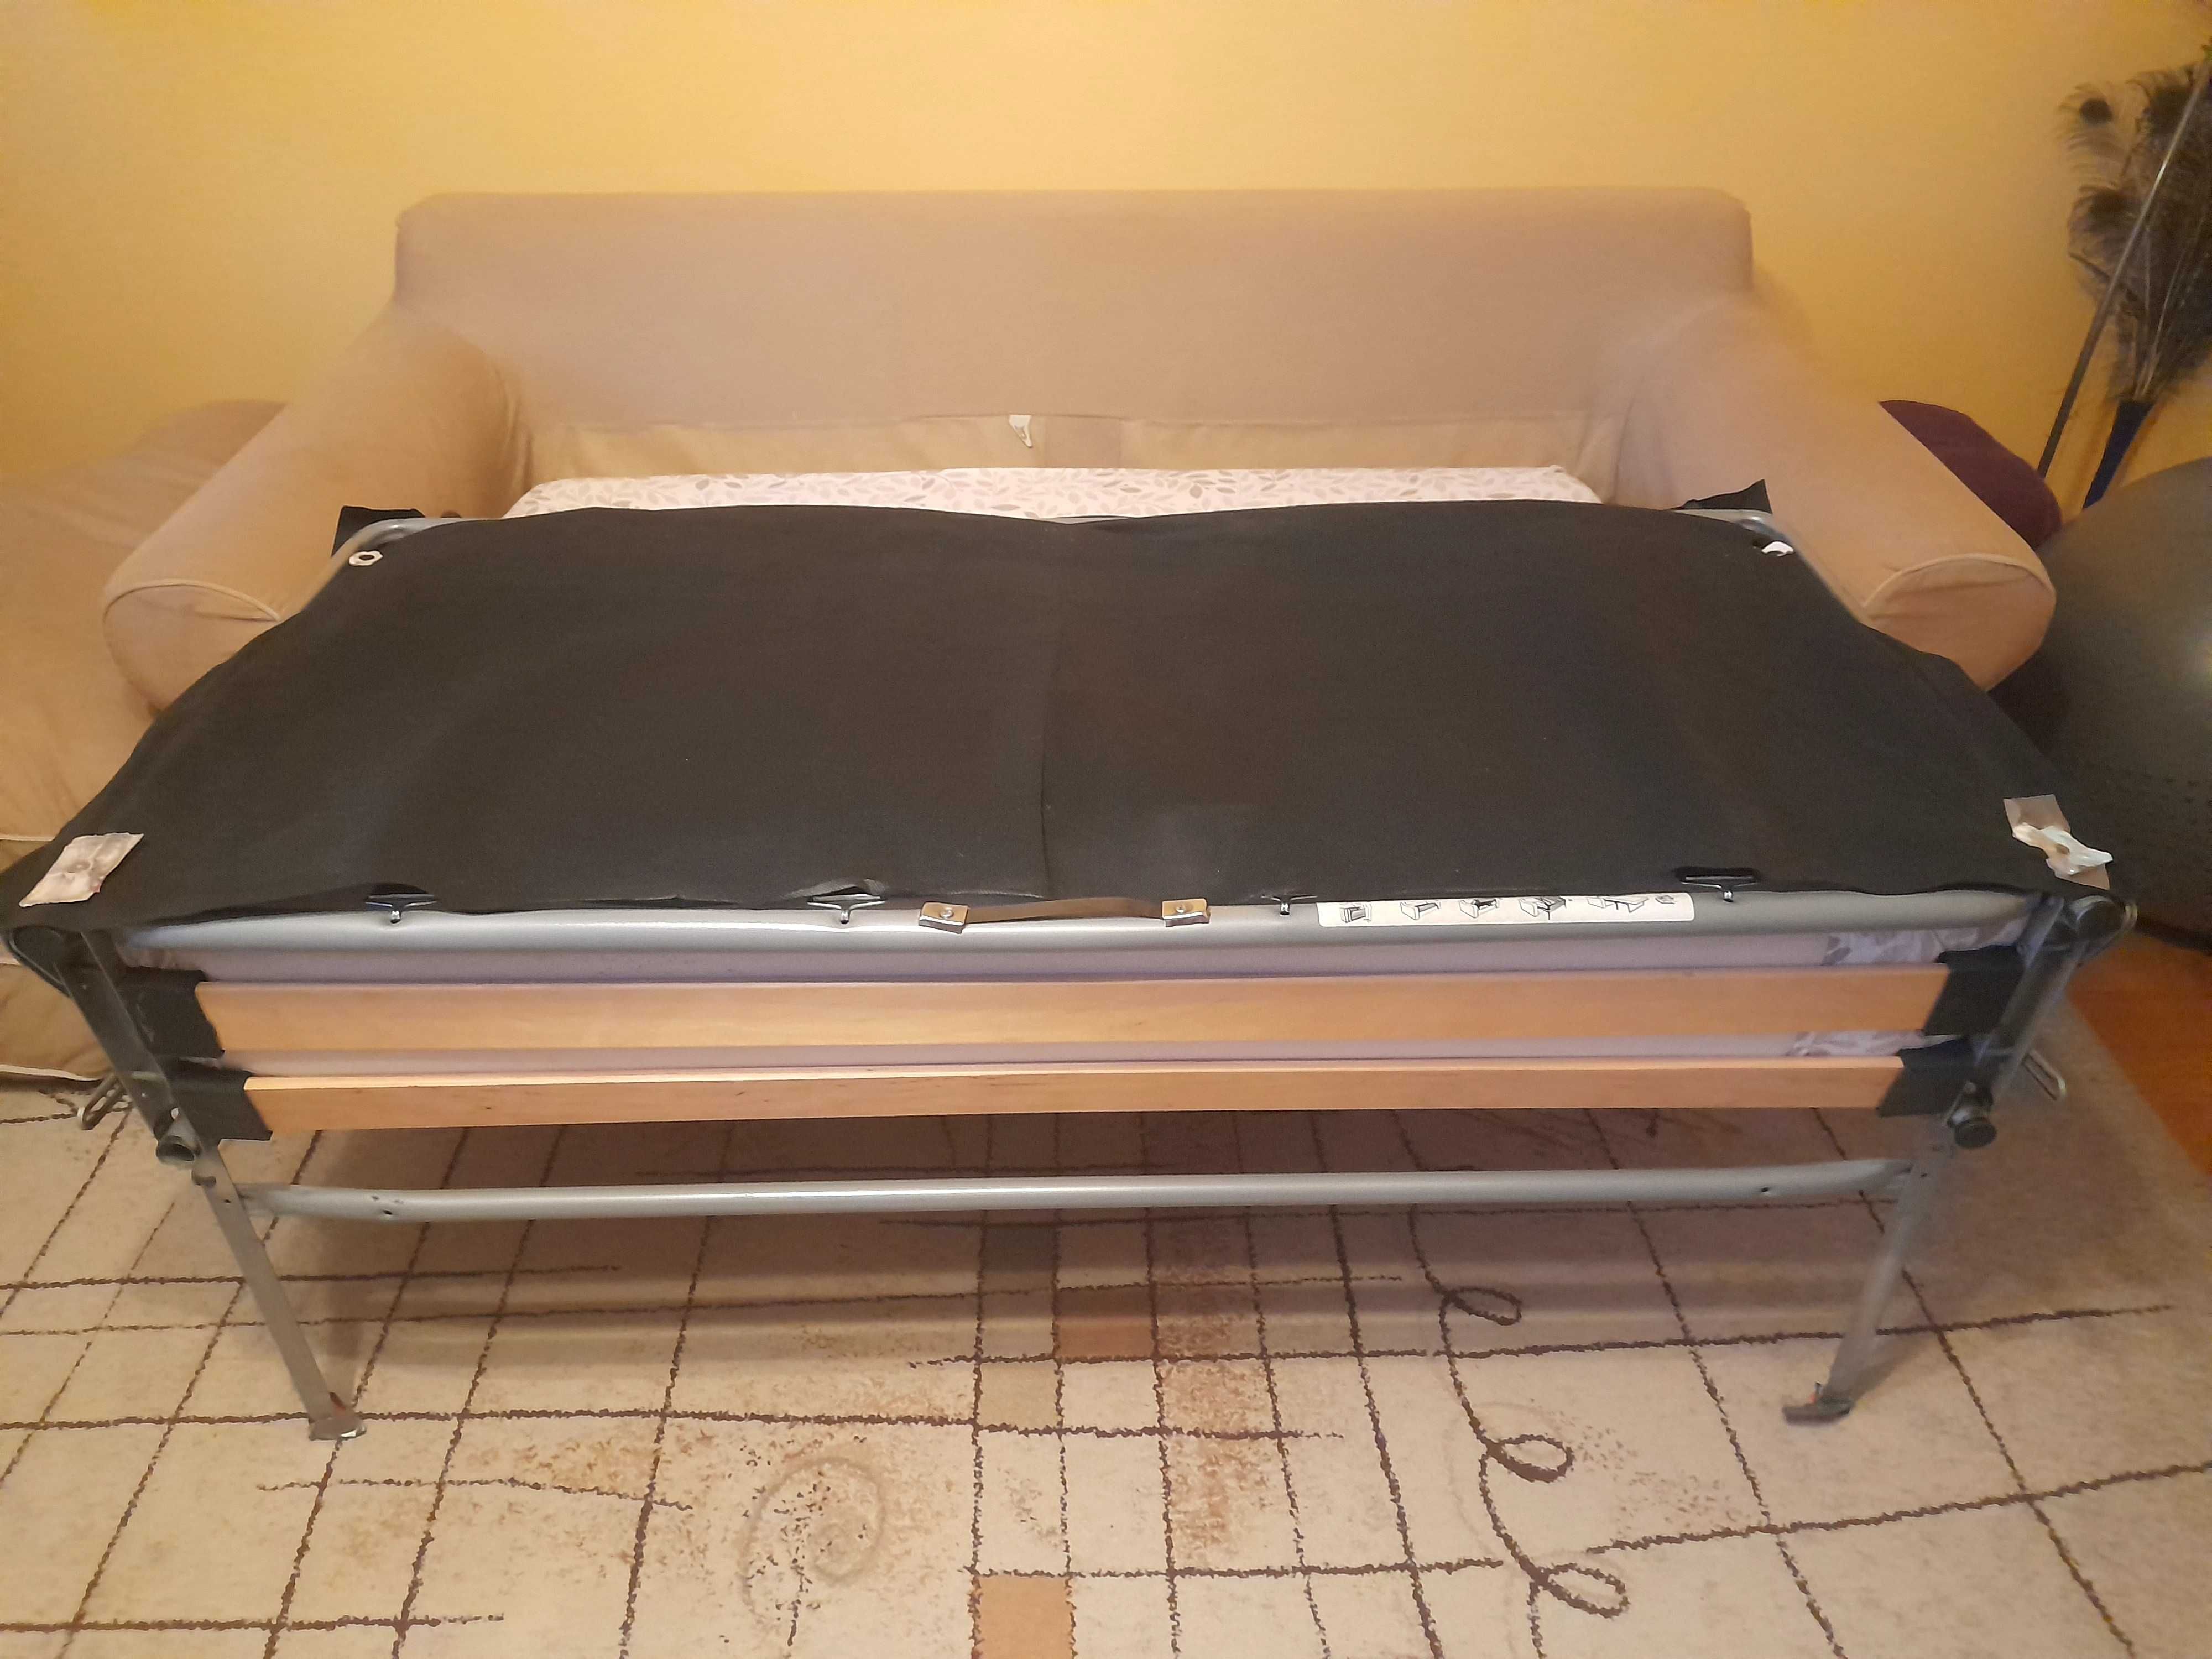 Sofa-łóżko w beżowym kolorze